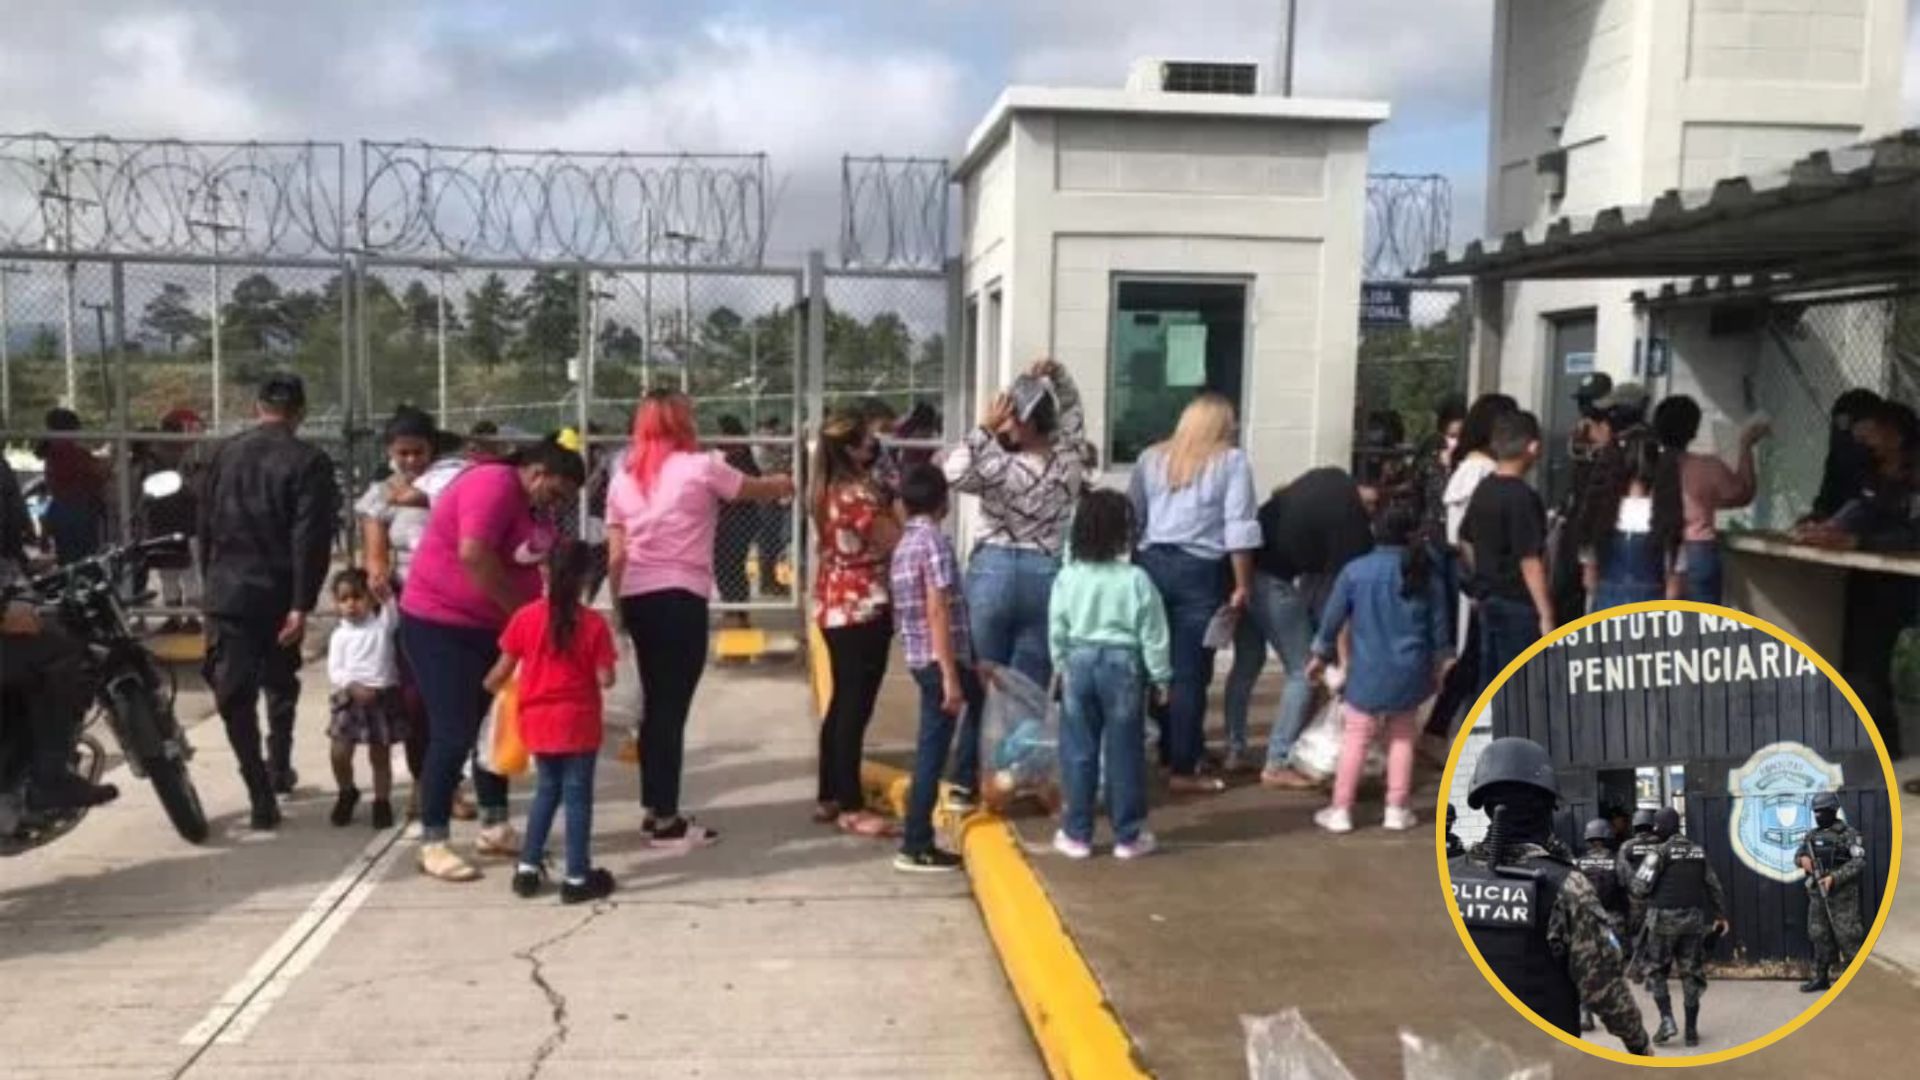 Suspendidas la visitas en los centros penitenciarios del país durante Semana Santa